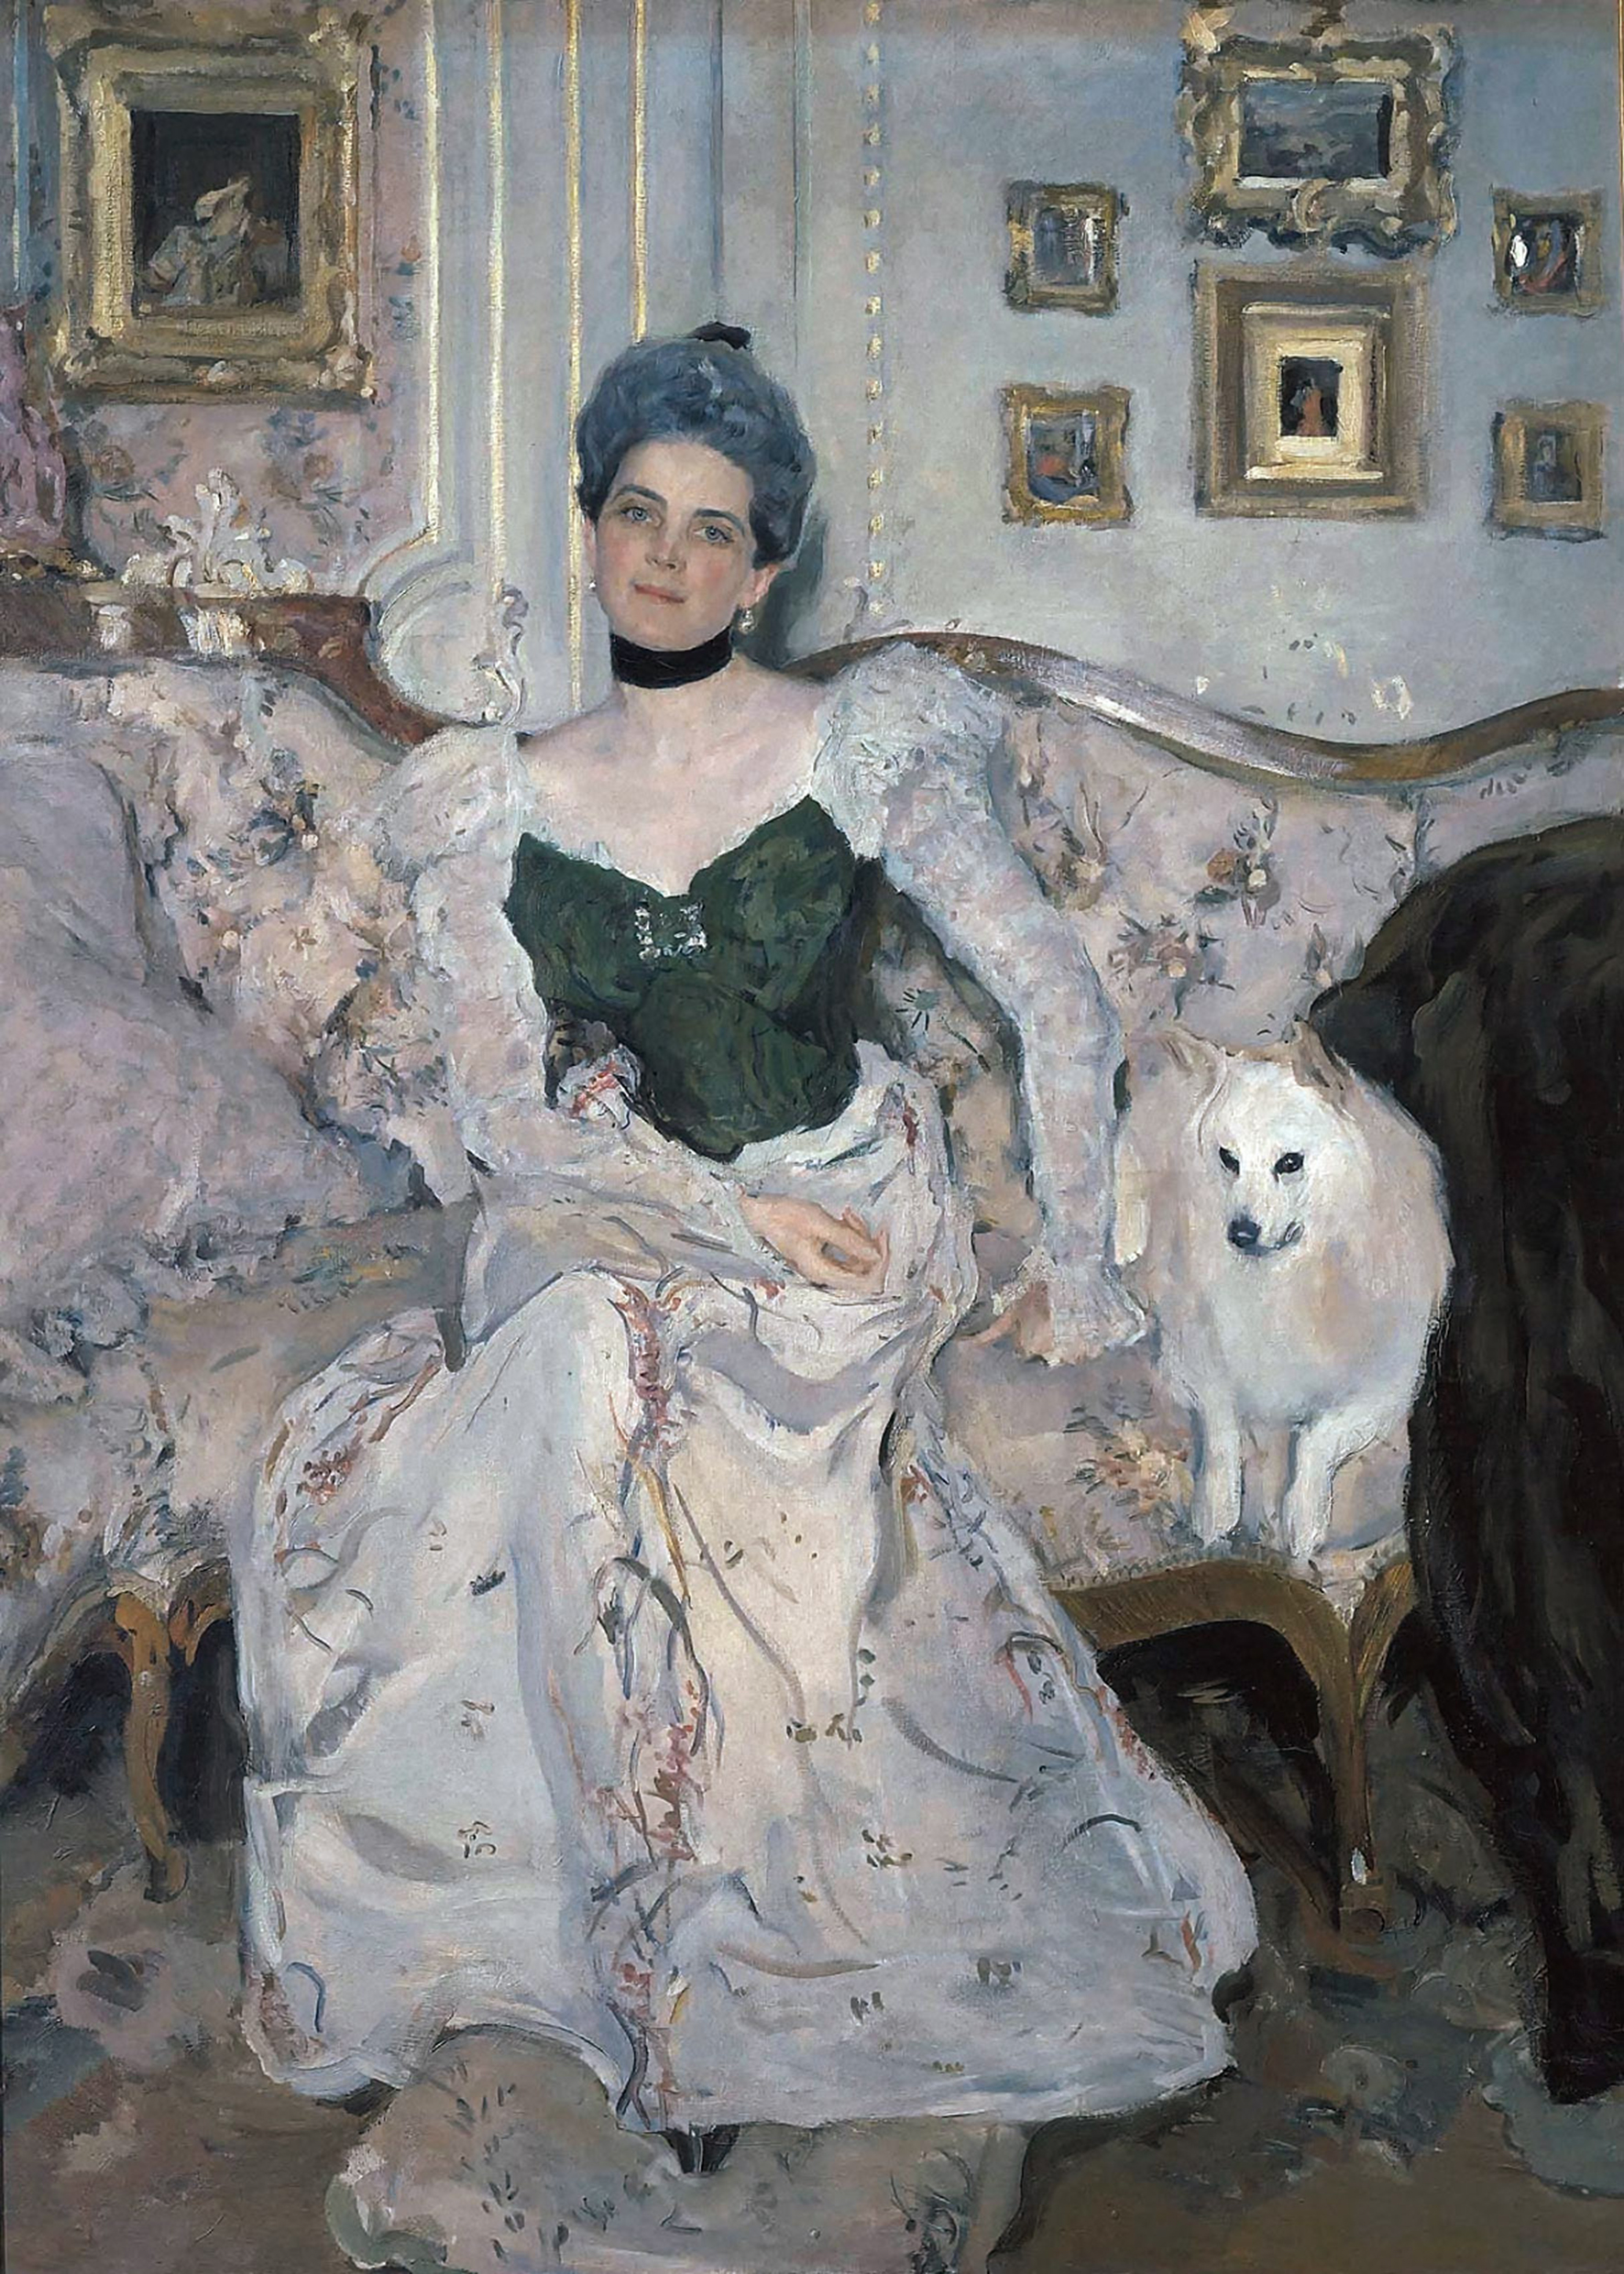 Зинаида Николаевна Юсупова by Valentin Serov - 1902 